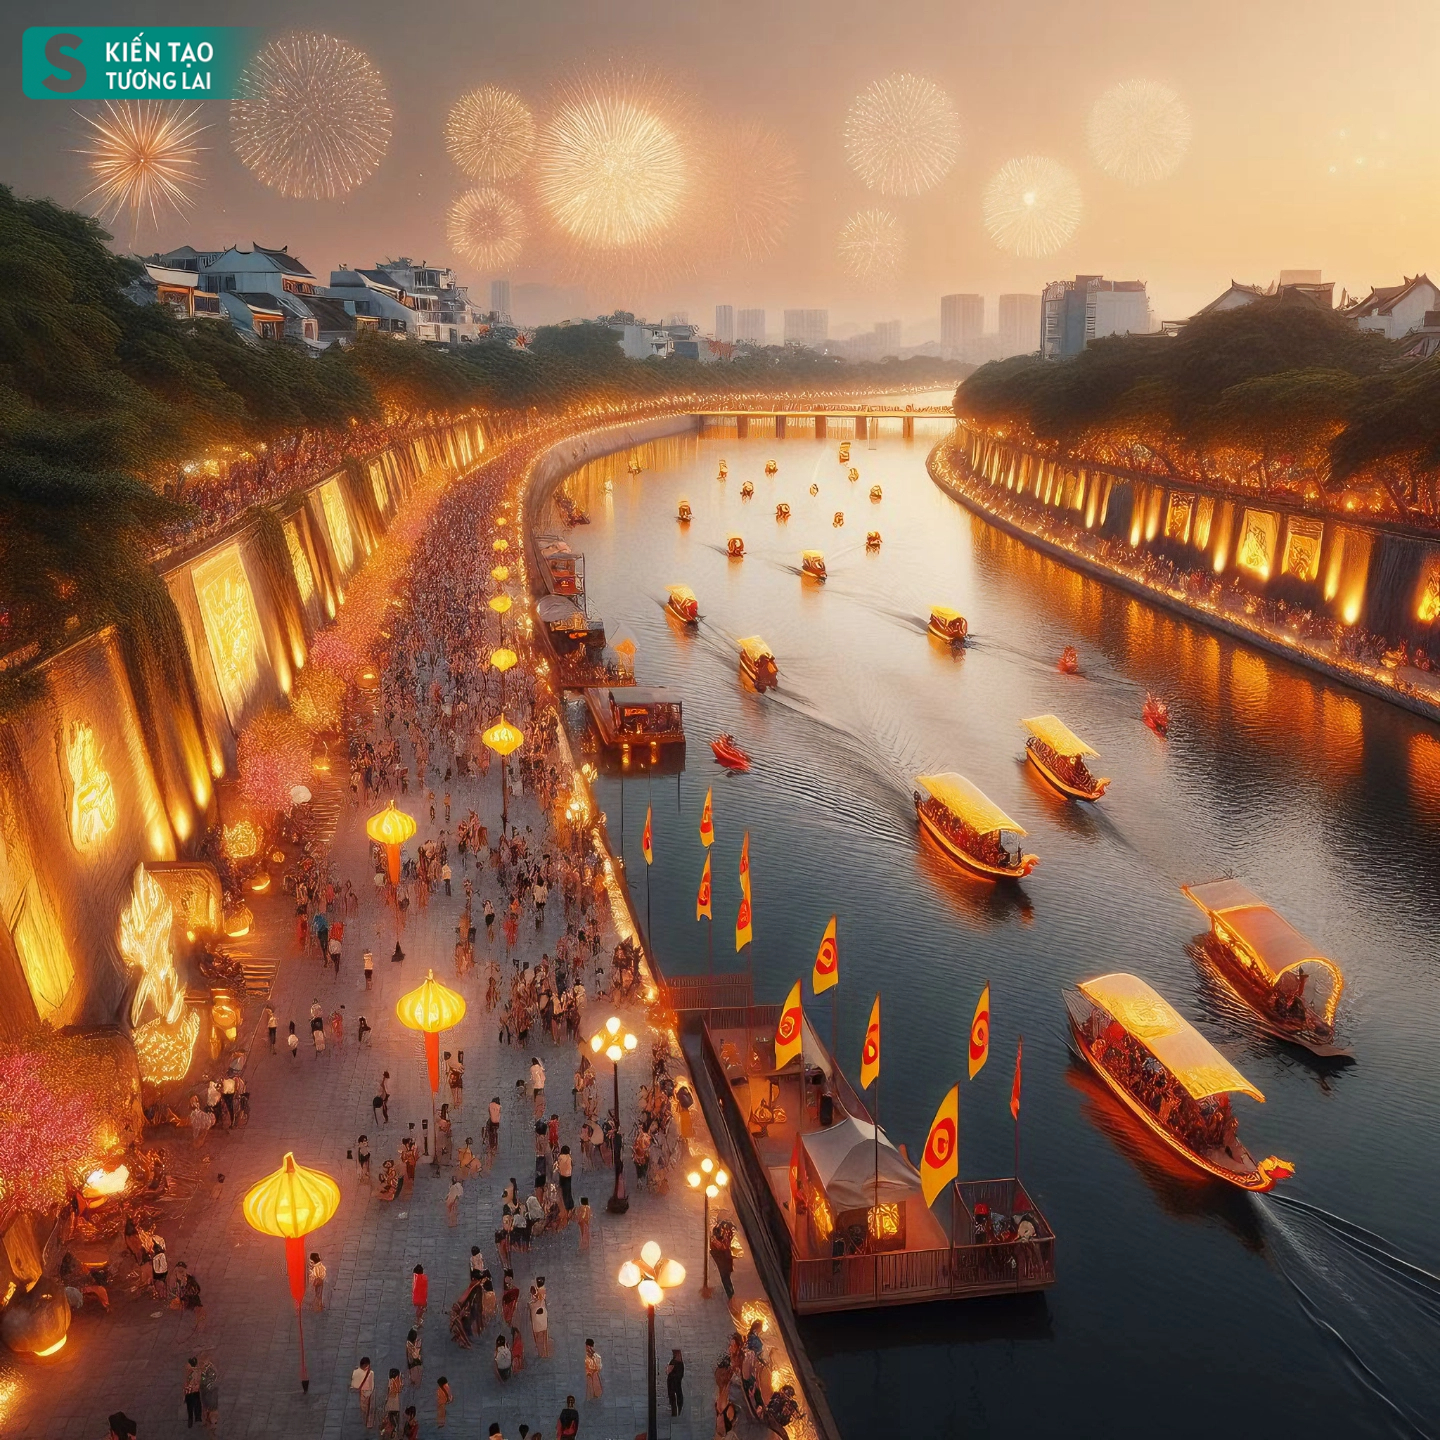 Năm 2022, Công ty cổ phần tập đoàn môi trường Nhật Việt JVE đề xuất ý tưởng cải tạo sông Tô Lịch thành công viên lịch sử- văn hóa- tâm linh kết hợp với hệ thống hầm ngầm chống ngập và cao tốc ngầm. Tuy nhiên, nhiều chuyên gia đầu ngành trong lĩnh vực đô thị đều cho rằng, ý tưởng tuy táo bạo nhưng “quá sức” với điều kiện kinh tế như Việt Nam hiện nay, cũng như khó khả thi trong thực tế - Ảnh minh hoạ bởi ứng dụng AI Bing